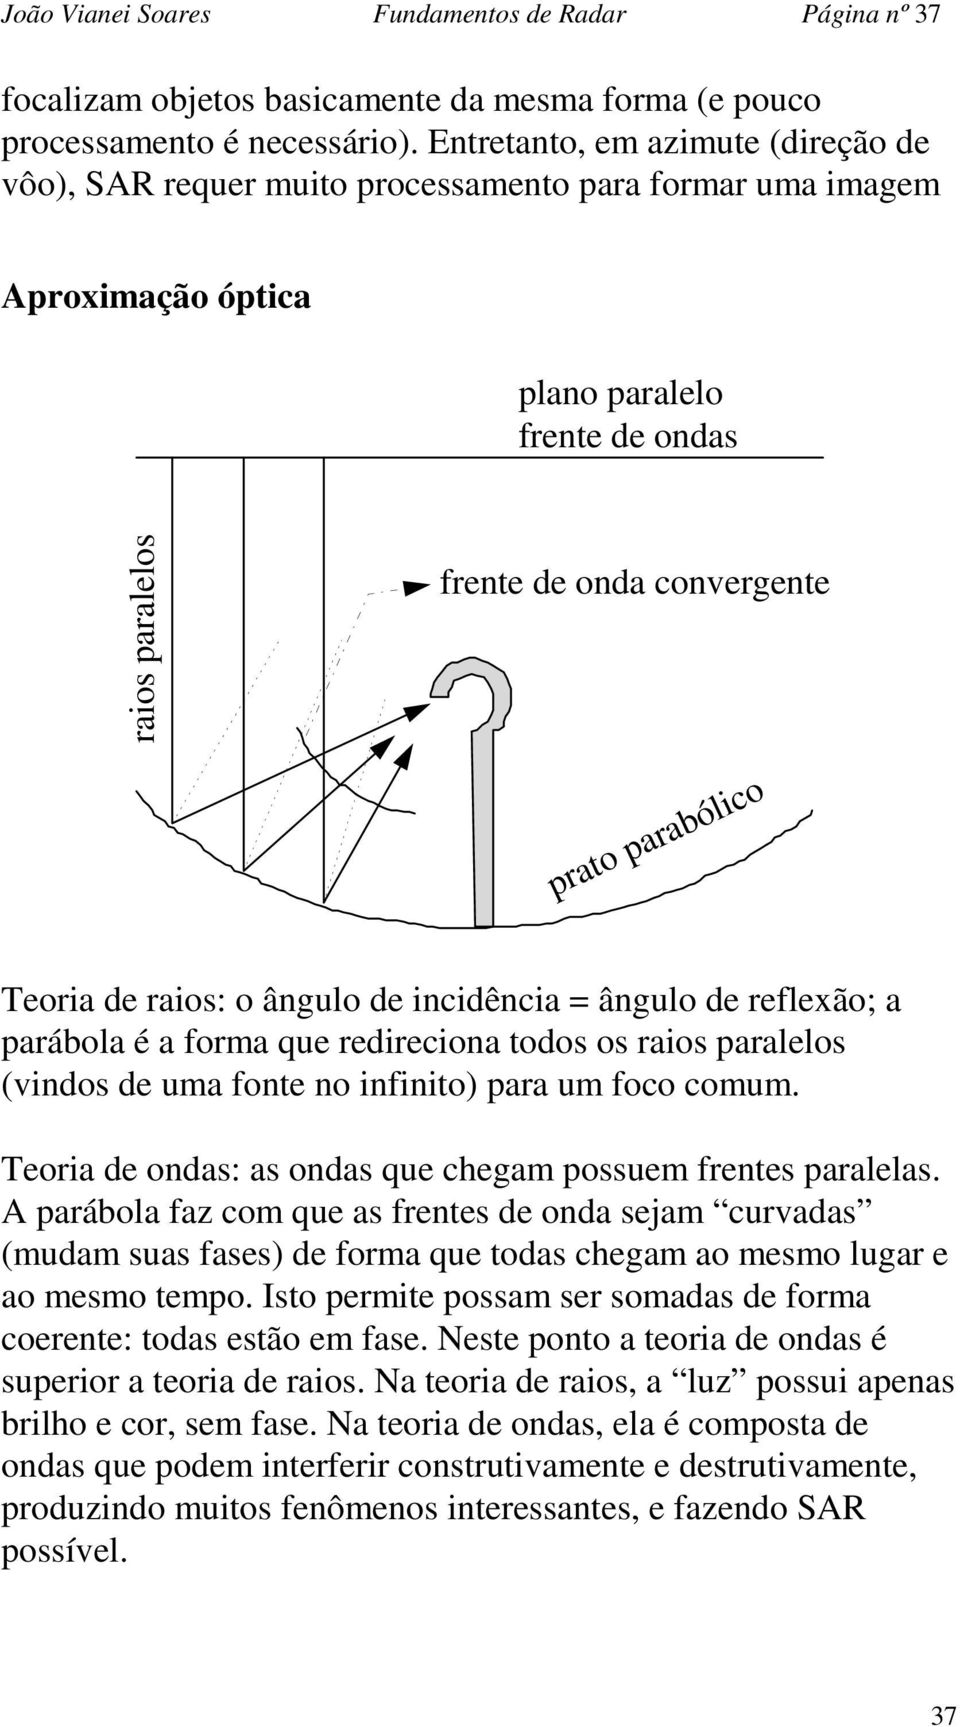 parabólico Teoria de raios: o ângulo de incidência = ângulo de reflexão; a parábola é a forma que redireciona todos os raios paralelos (vindos de uma fonte no infinito) para um foco comum.